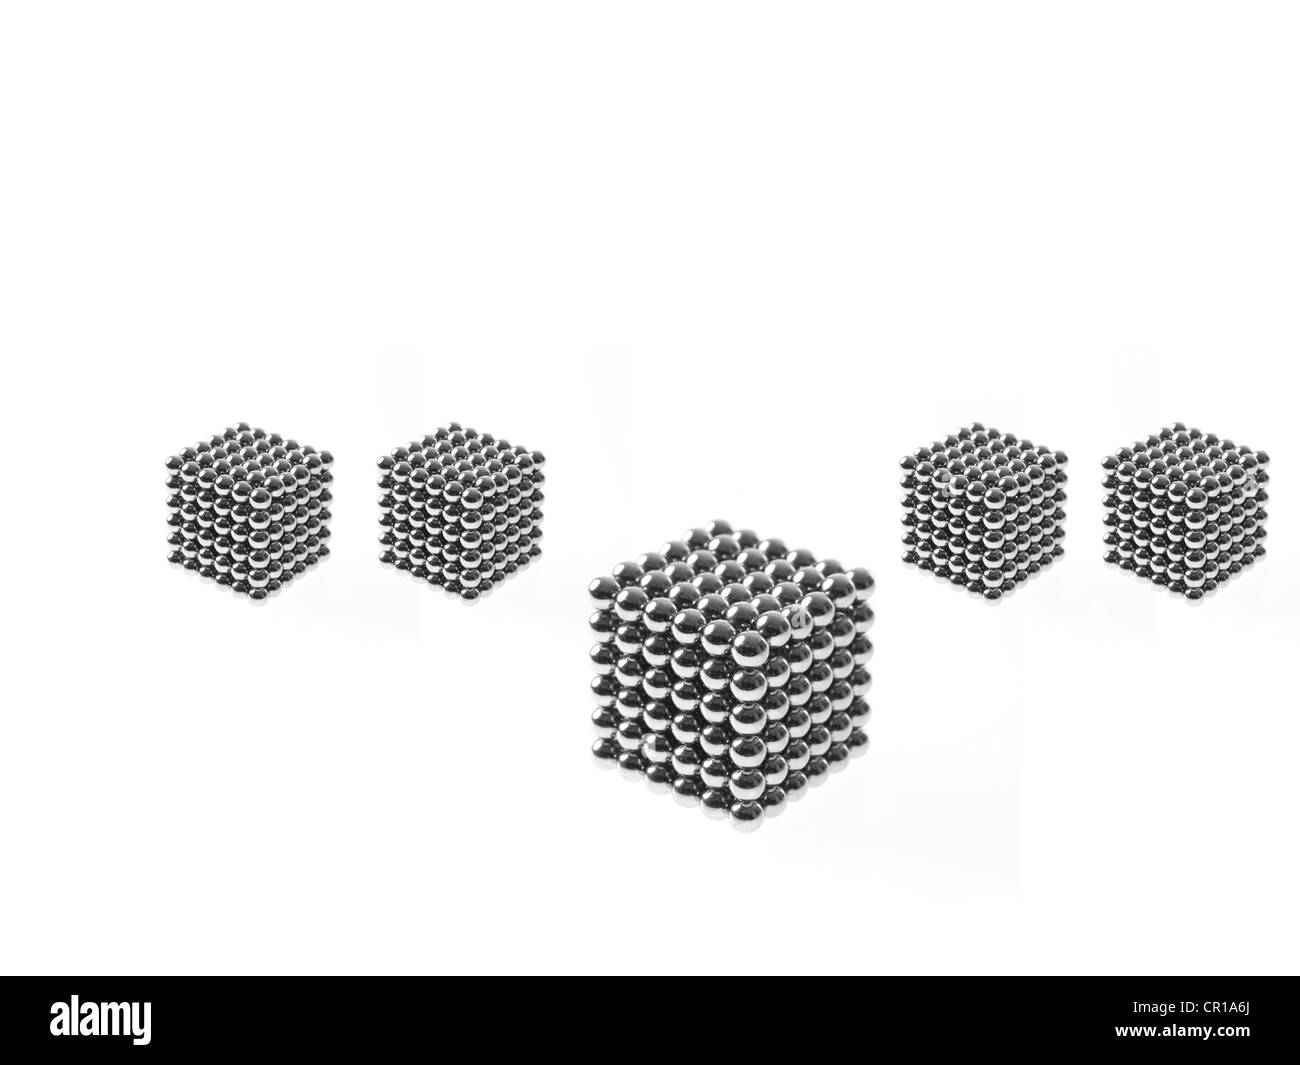 Foto de estudio de bolas pachinko organizados en el grupo de cubos Foto de stock